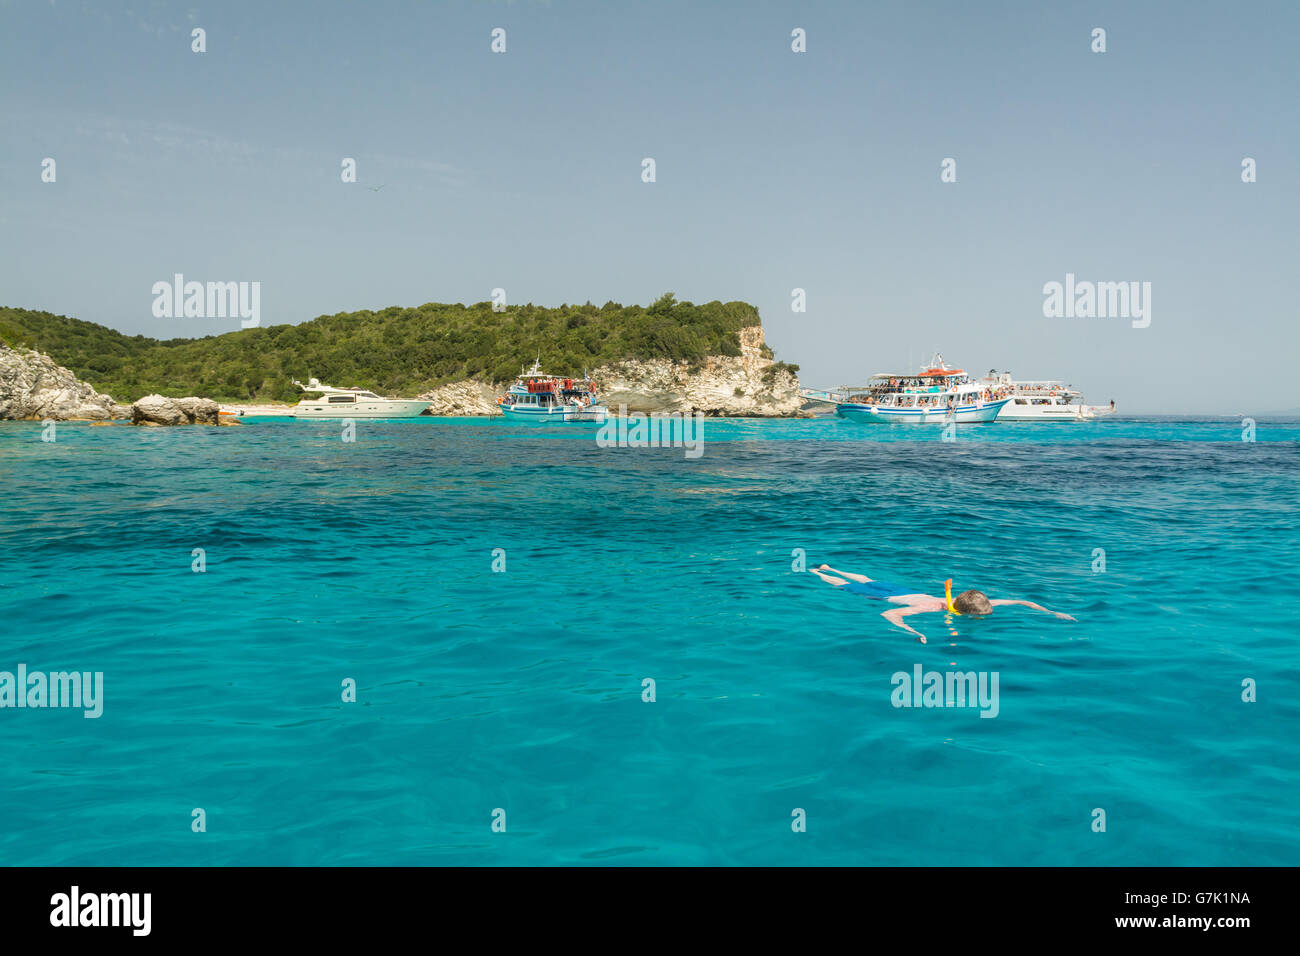 Antipaxos - tuba croisière touristique bateaux ancrés au large de la petite île Ionienne d'Antipaxos pour permettre aux touristes de nager dans l'eau claire comme du cristal Banque D'Images